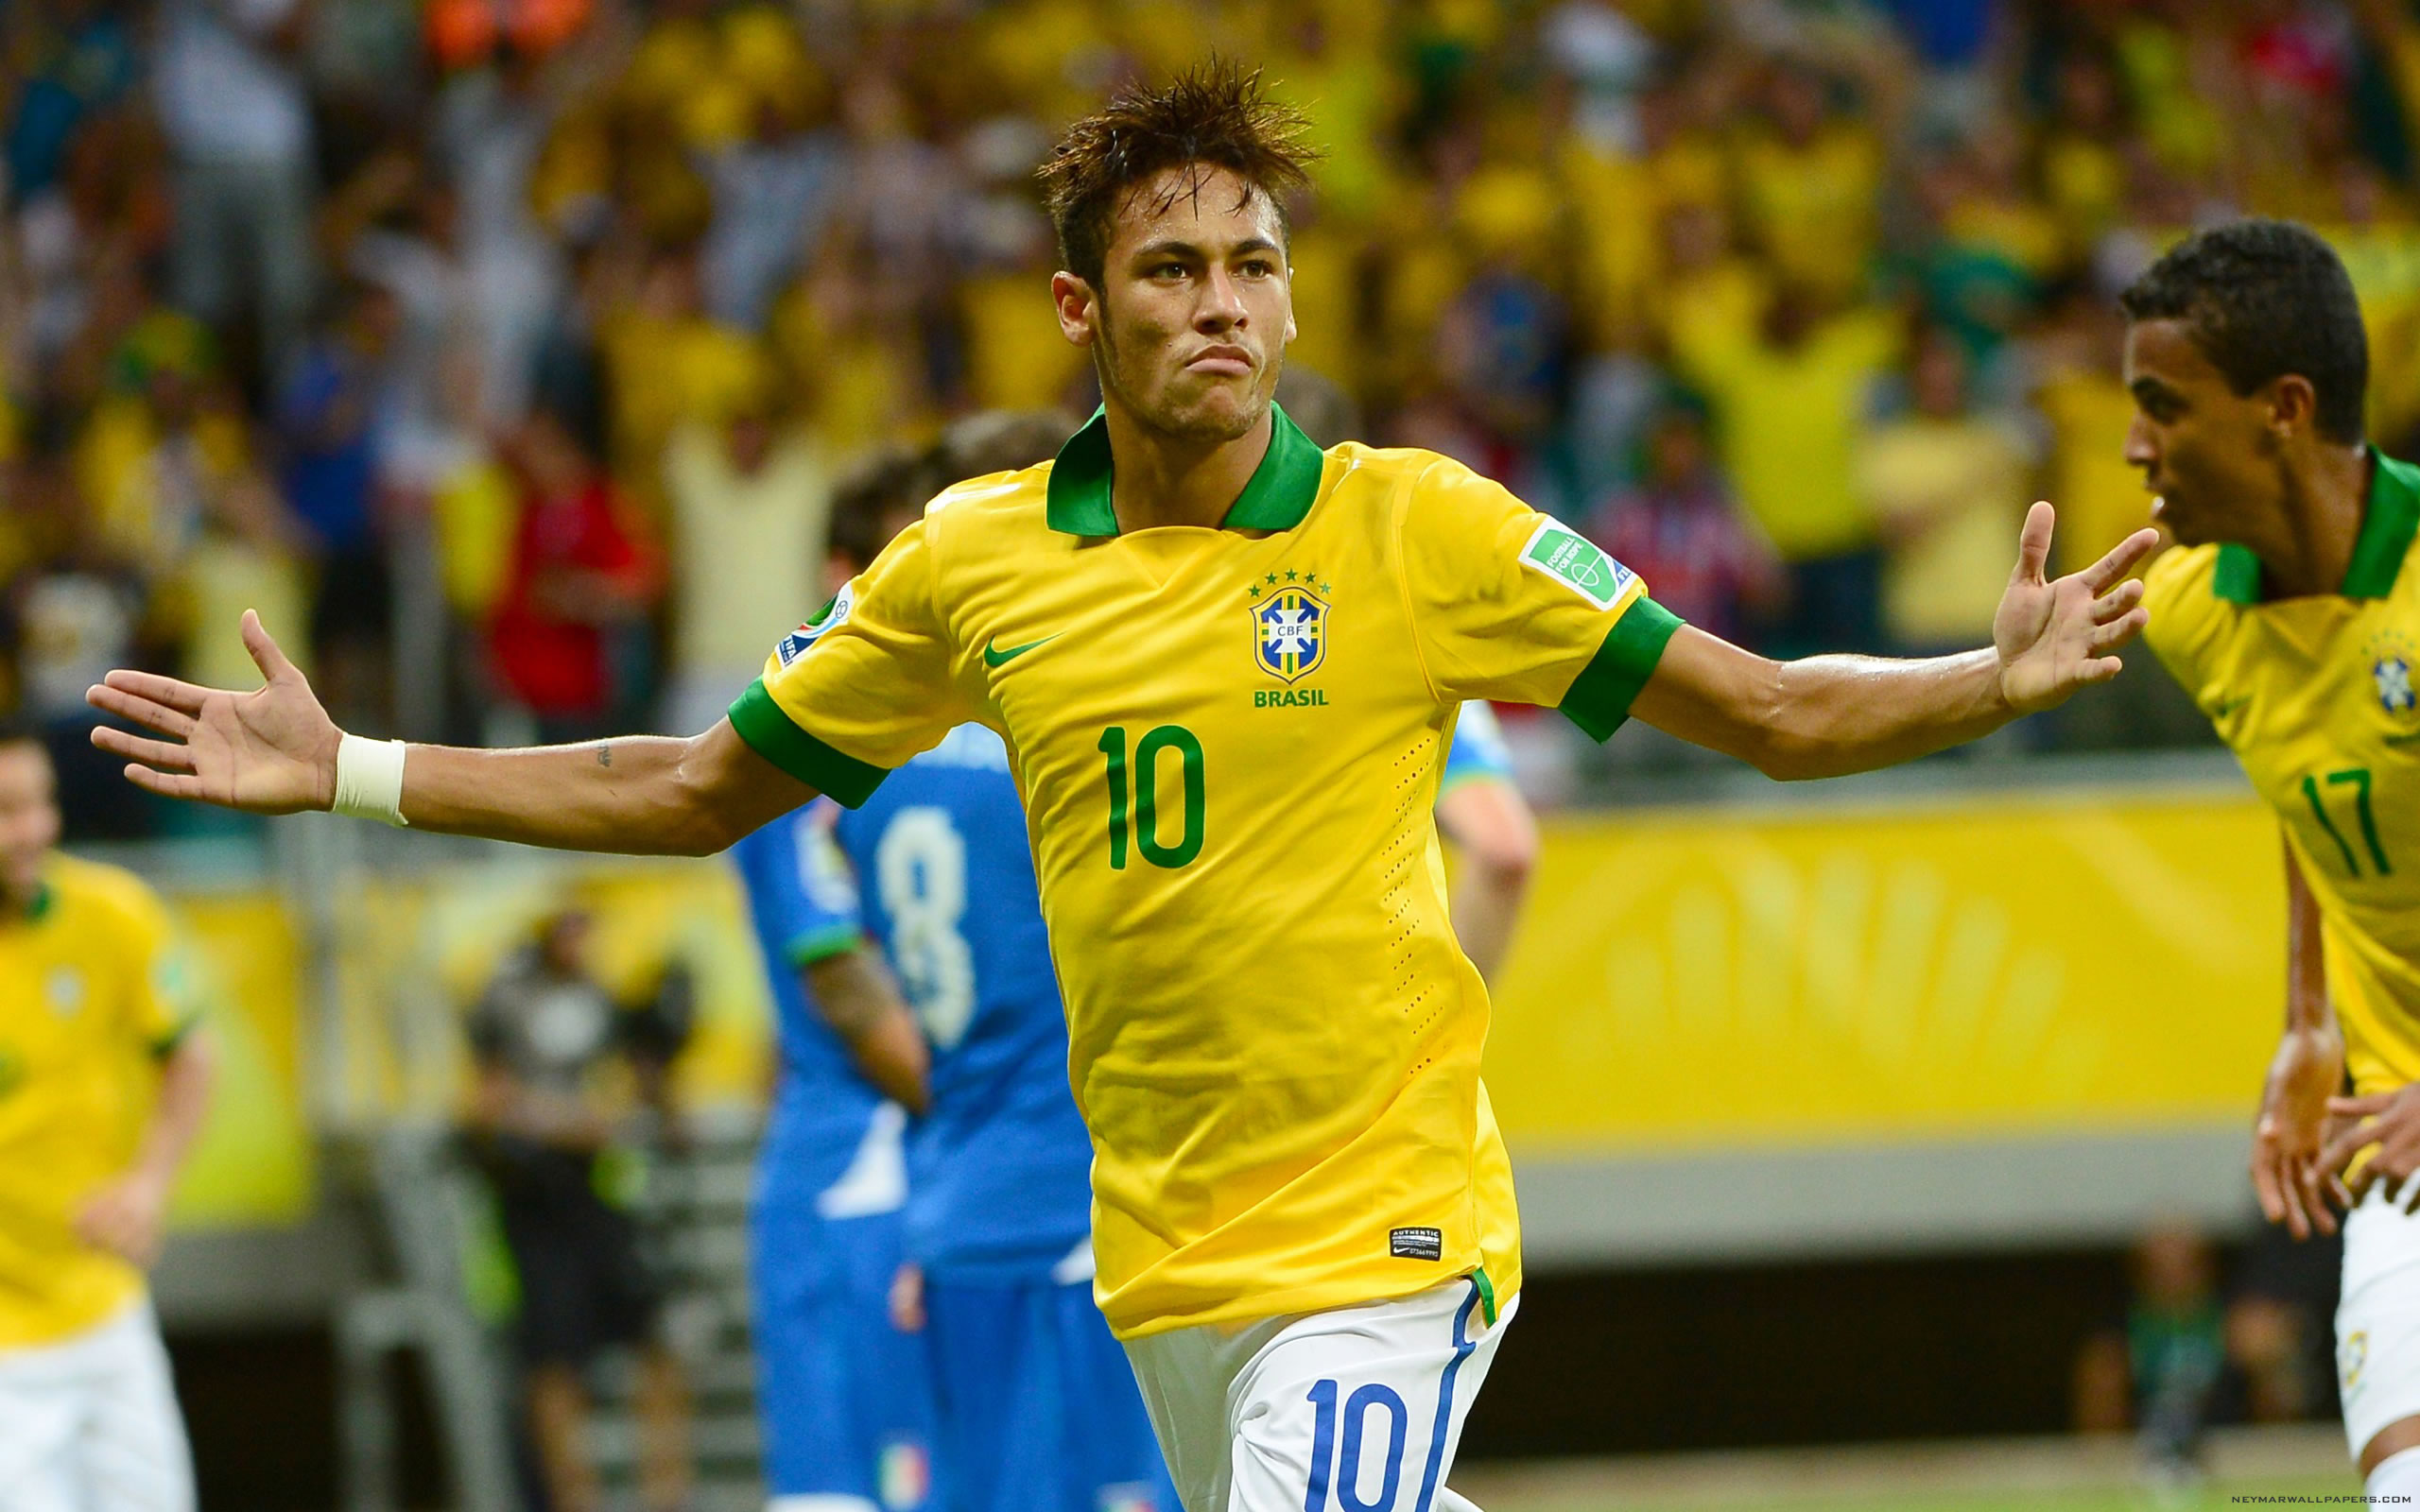 Neymar Brazil World Cup 2014 wallpaper - Neymar Wallpapers